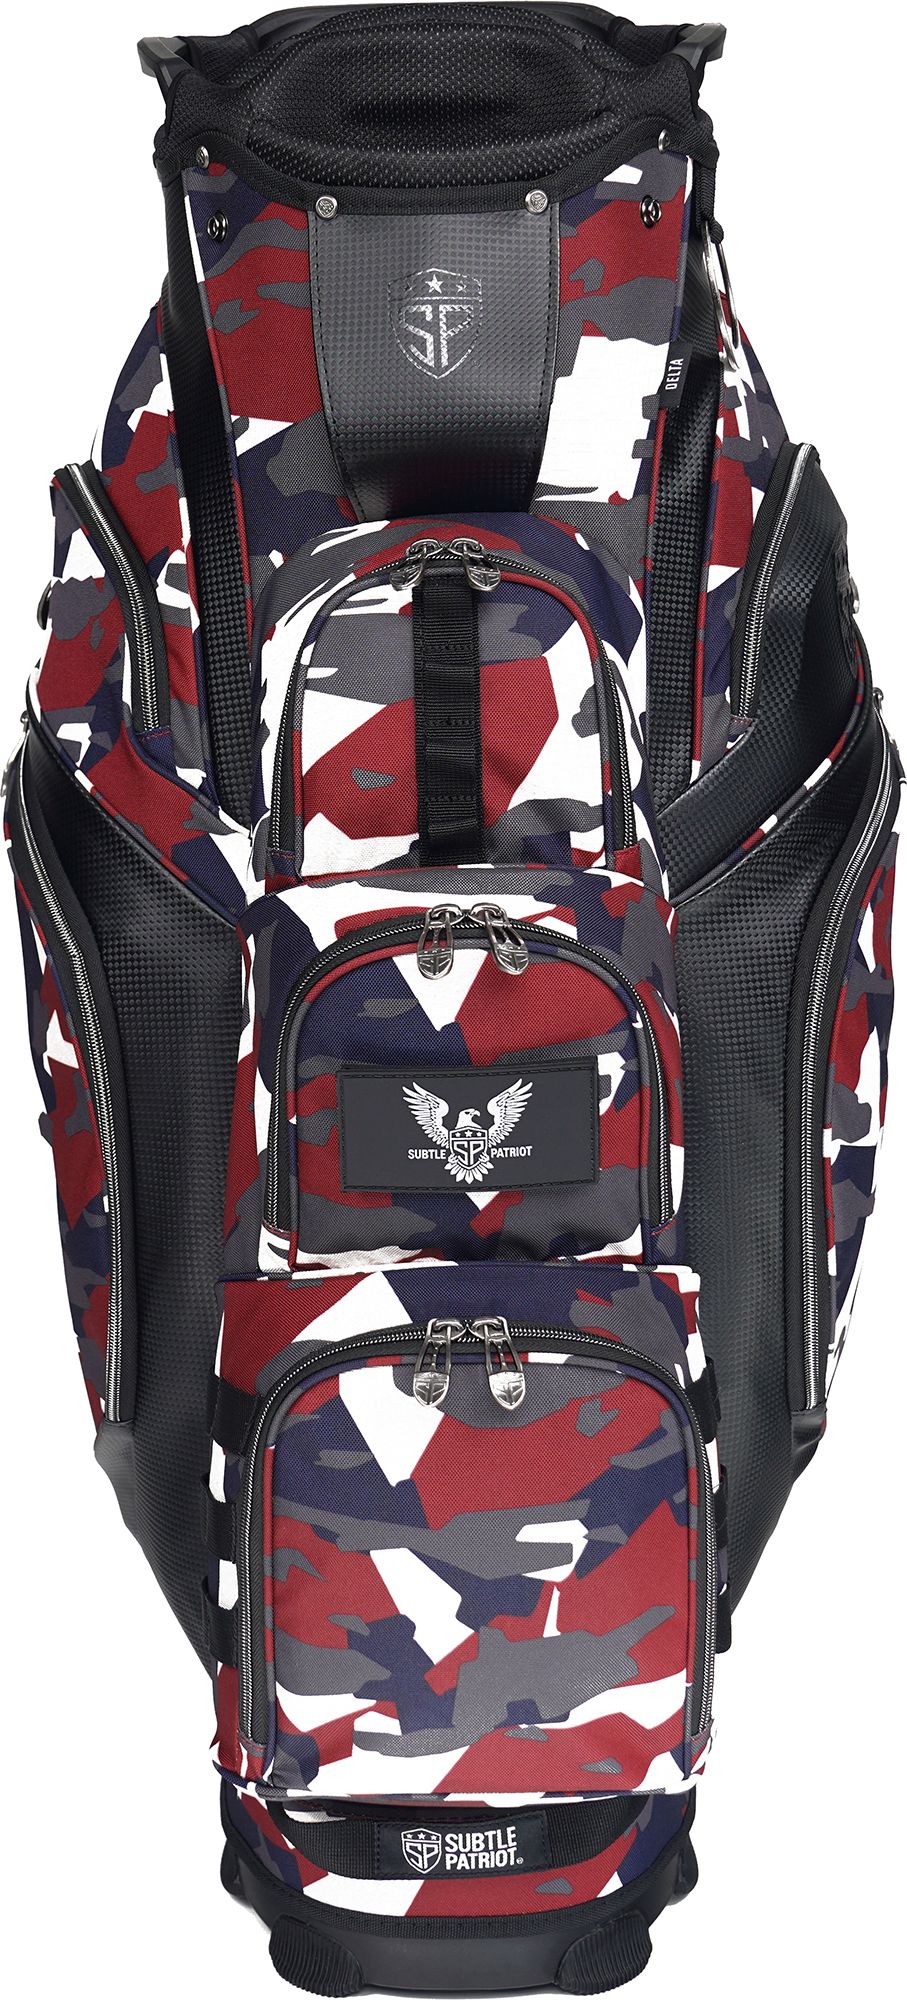 Subtle Patriot Tier 1 Cart Bag